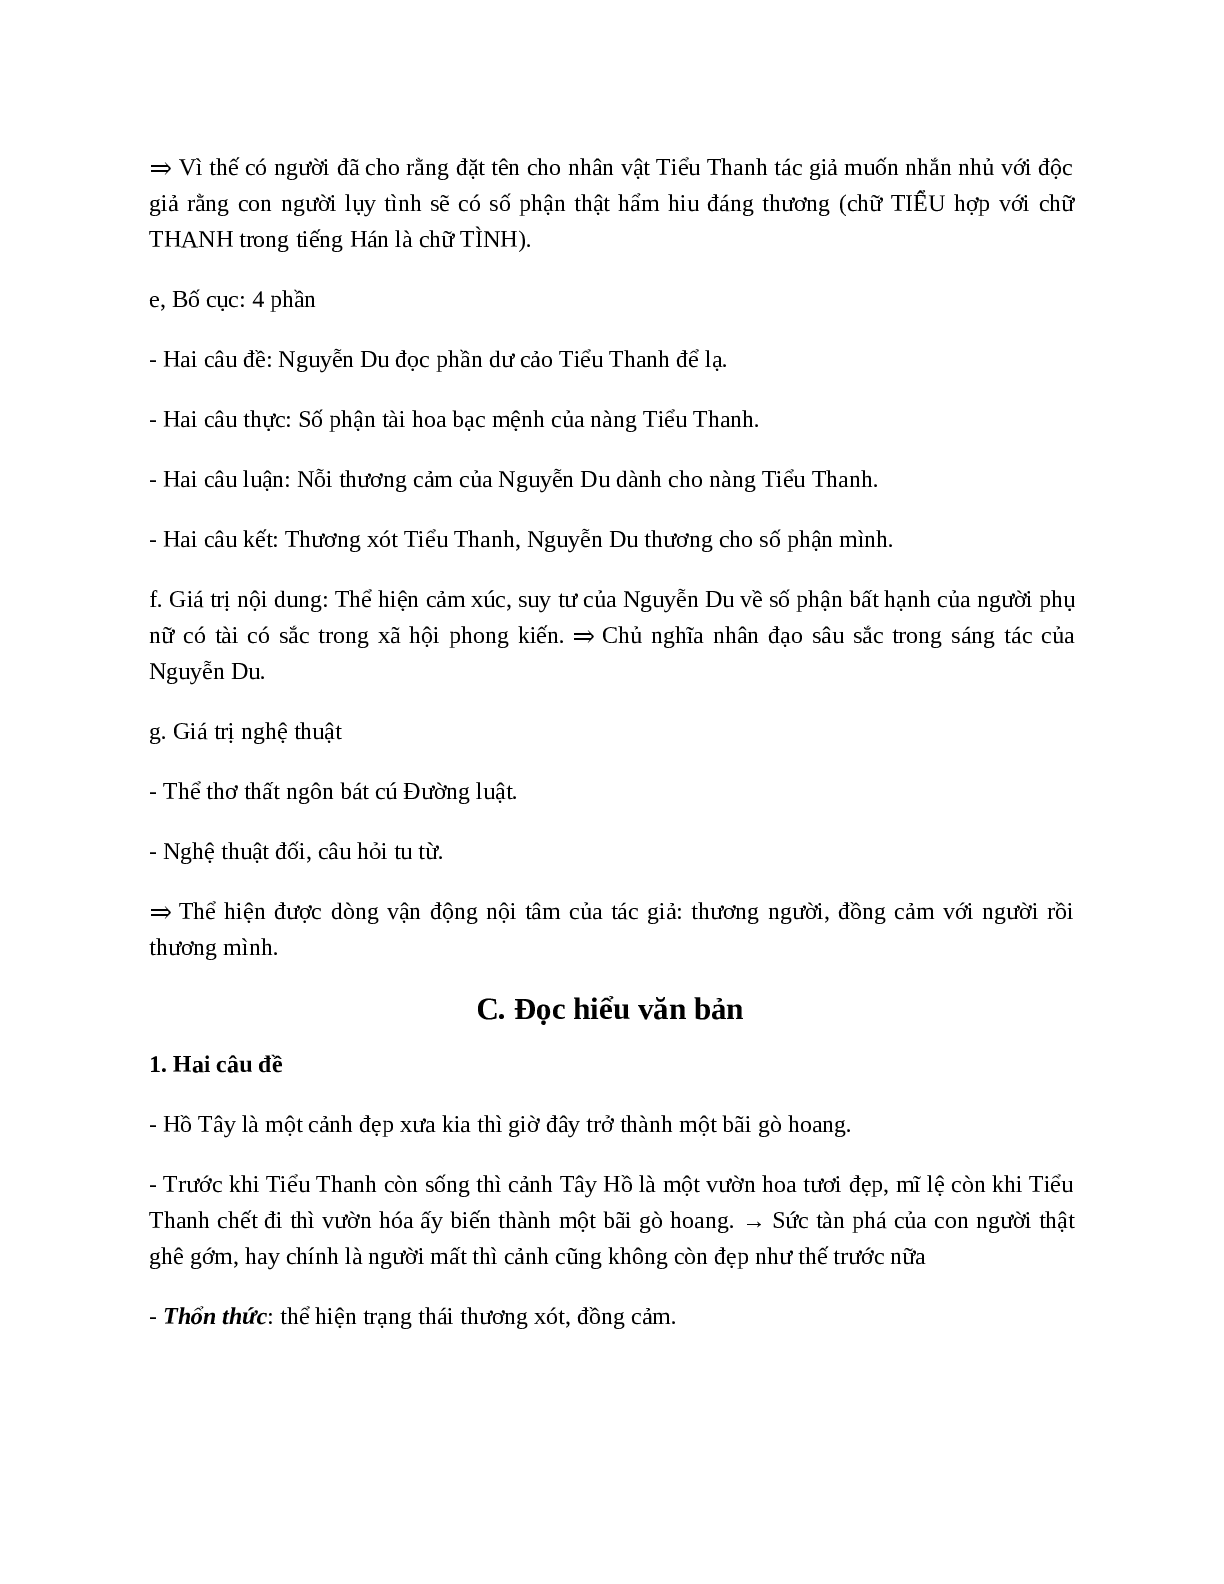 Soạn Đọc Tiểu Thanh Kí - Tác giả tác phẩm - Ngữ văn lớp 10 (trang 5)